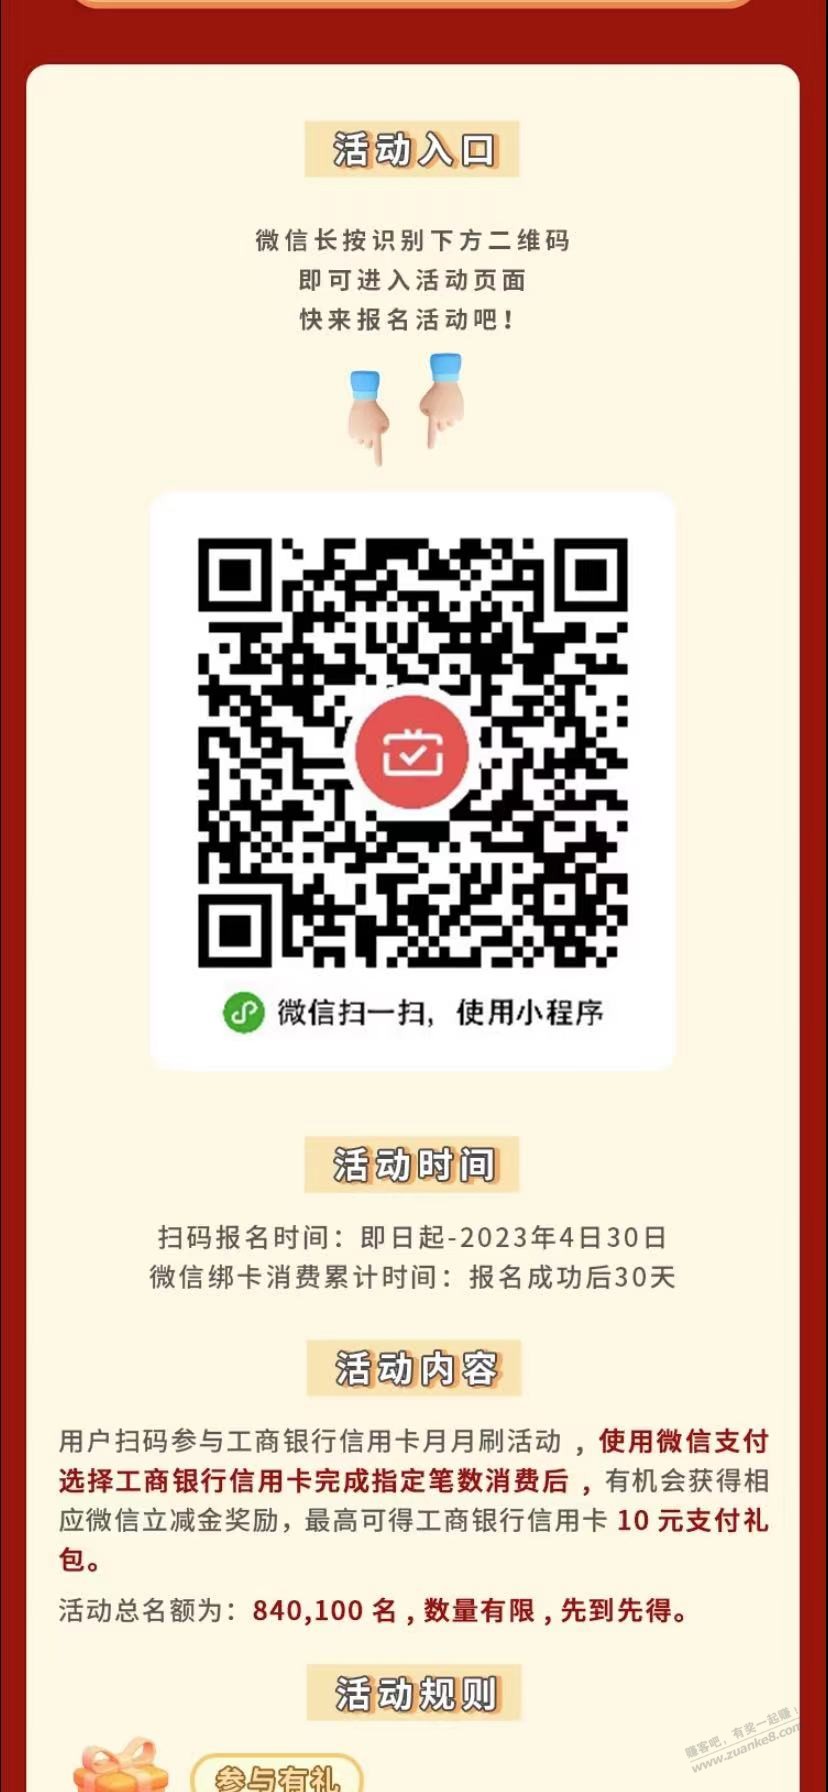 V.x 工行 xing/用卡 10元-惠小助(52huixz.com)